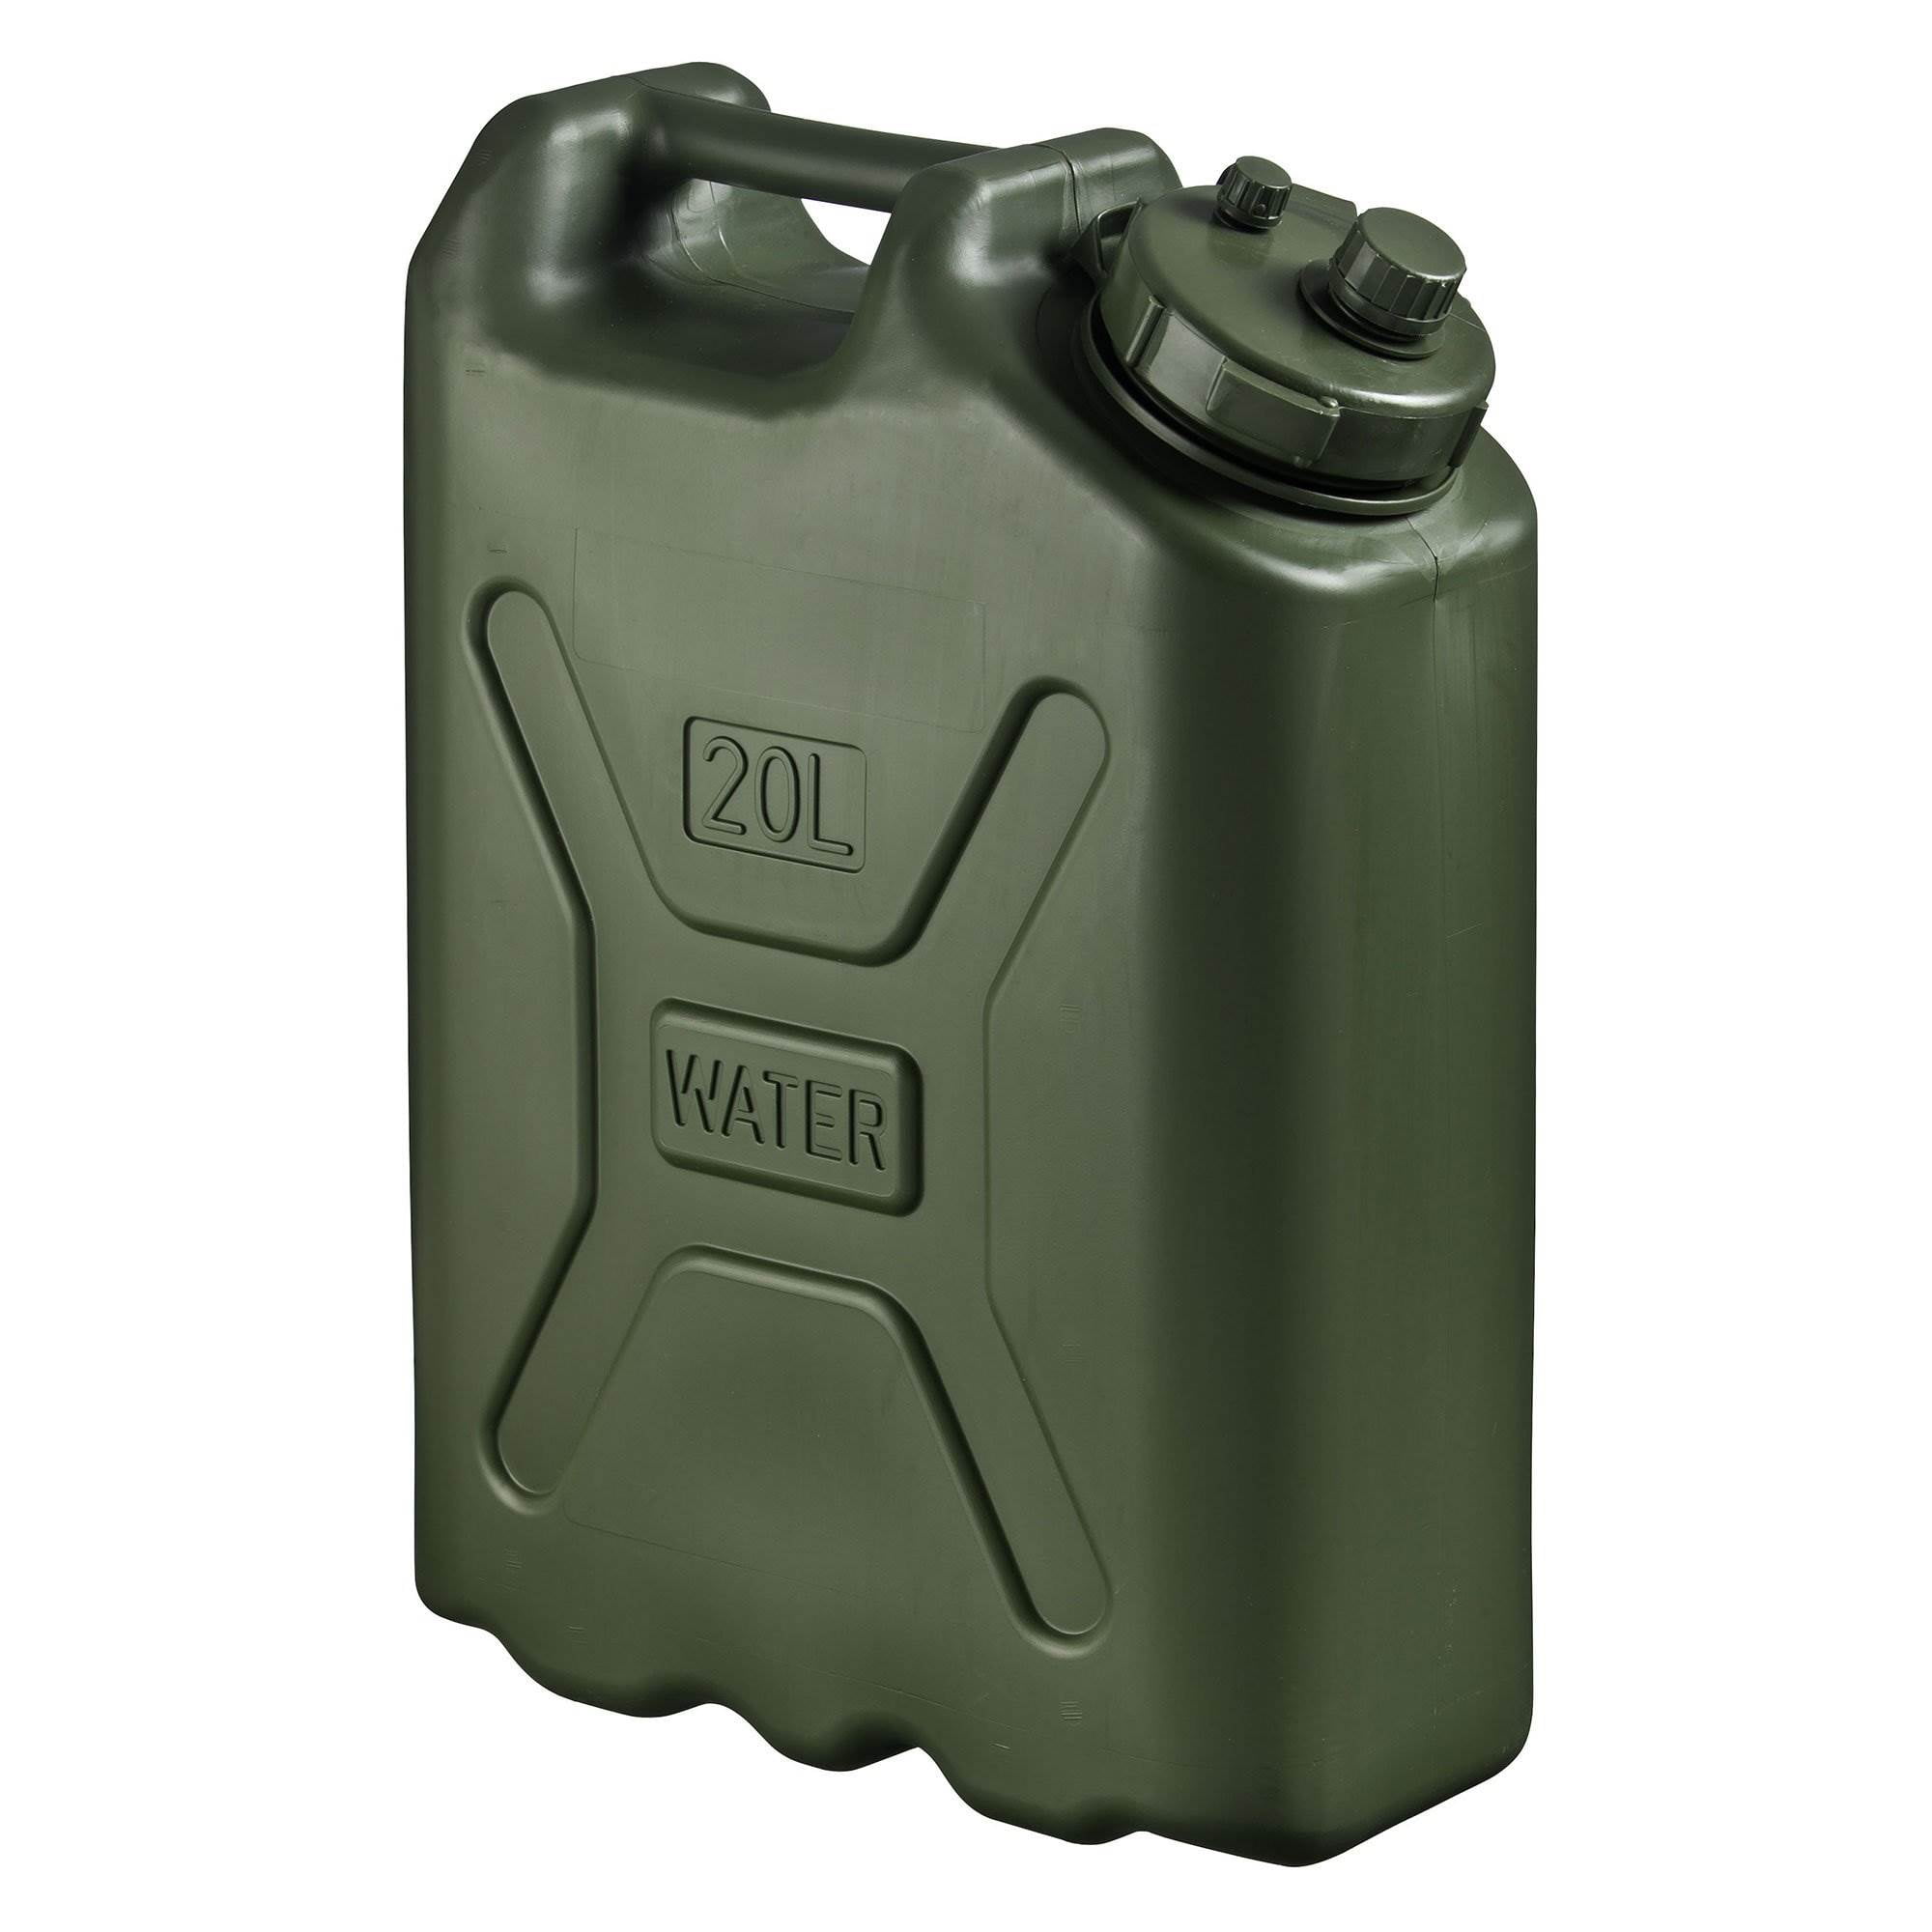 セプターBPA耐久性5ガロン20リットルポータブル貯水容器（5パック） Scepter BPA Durable Gallon 20 Liter Portable Water Storage Container (5 Pack)